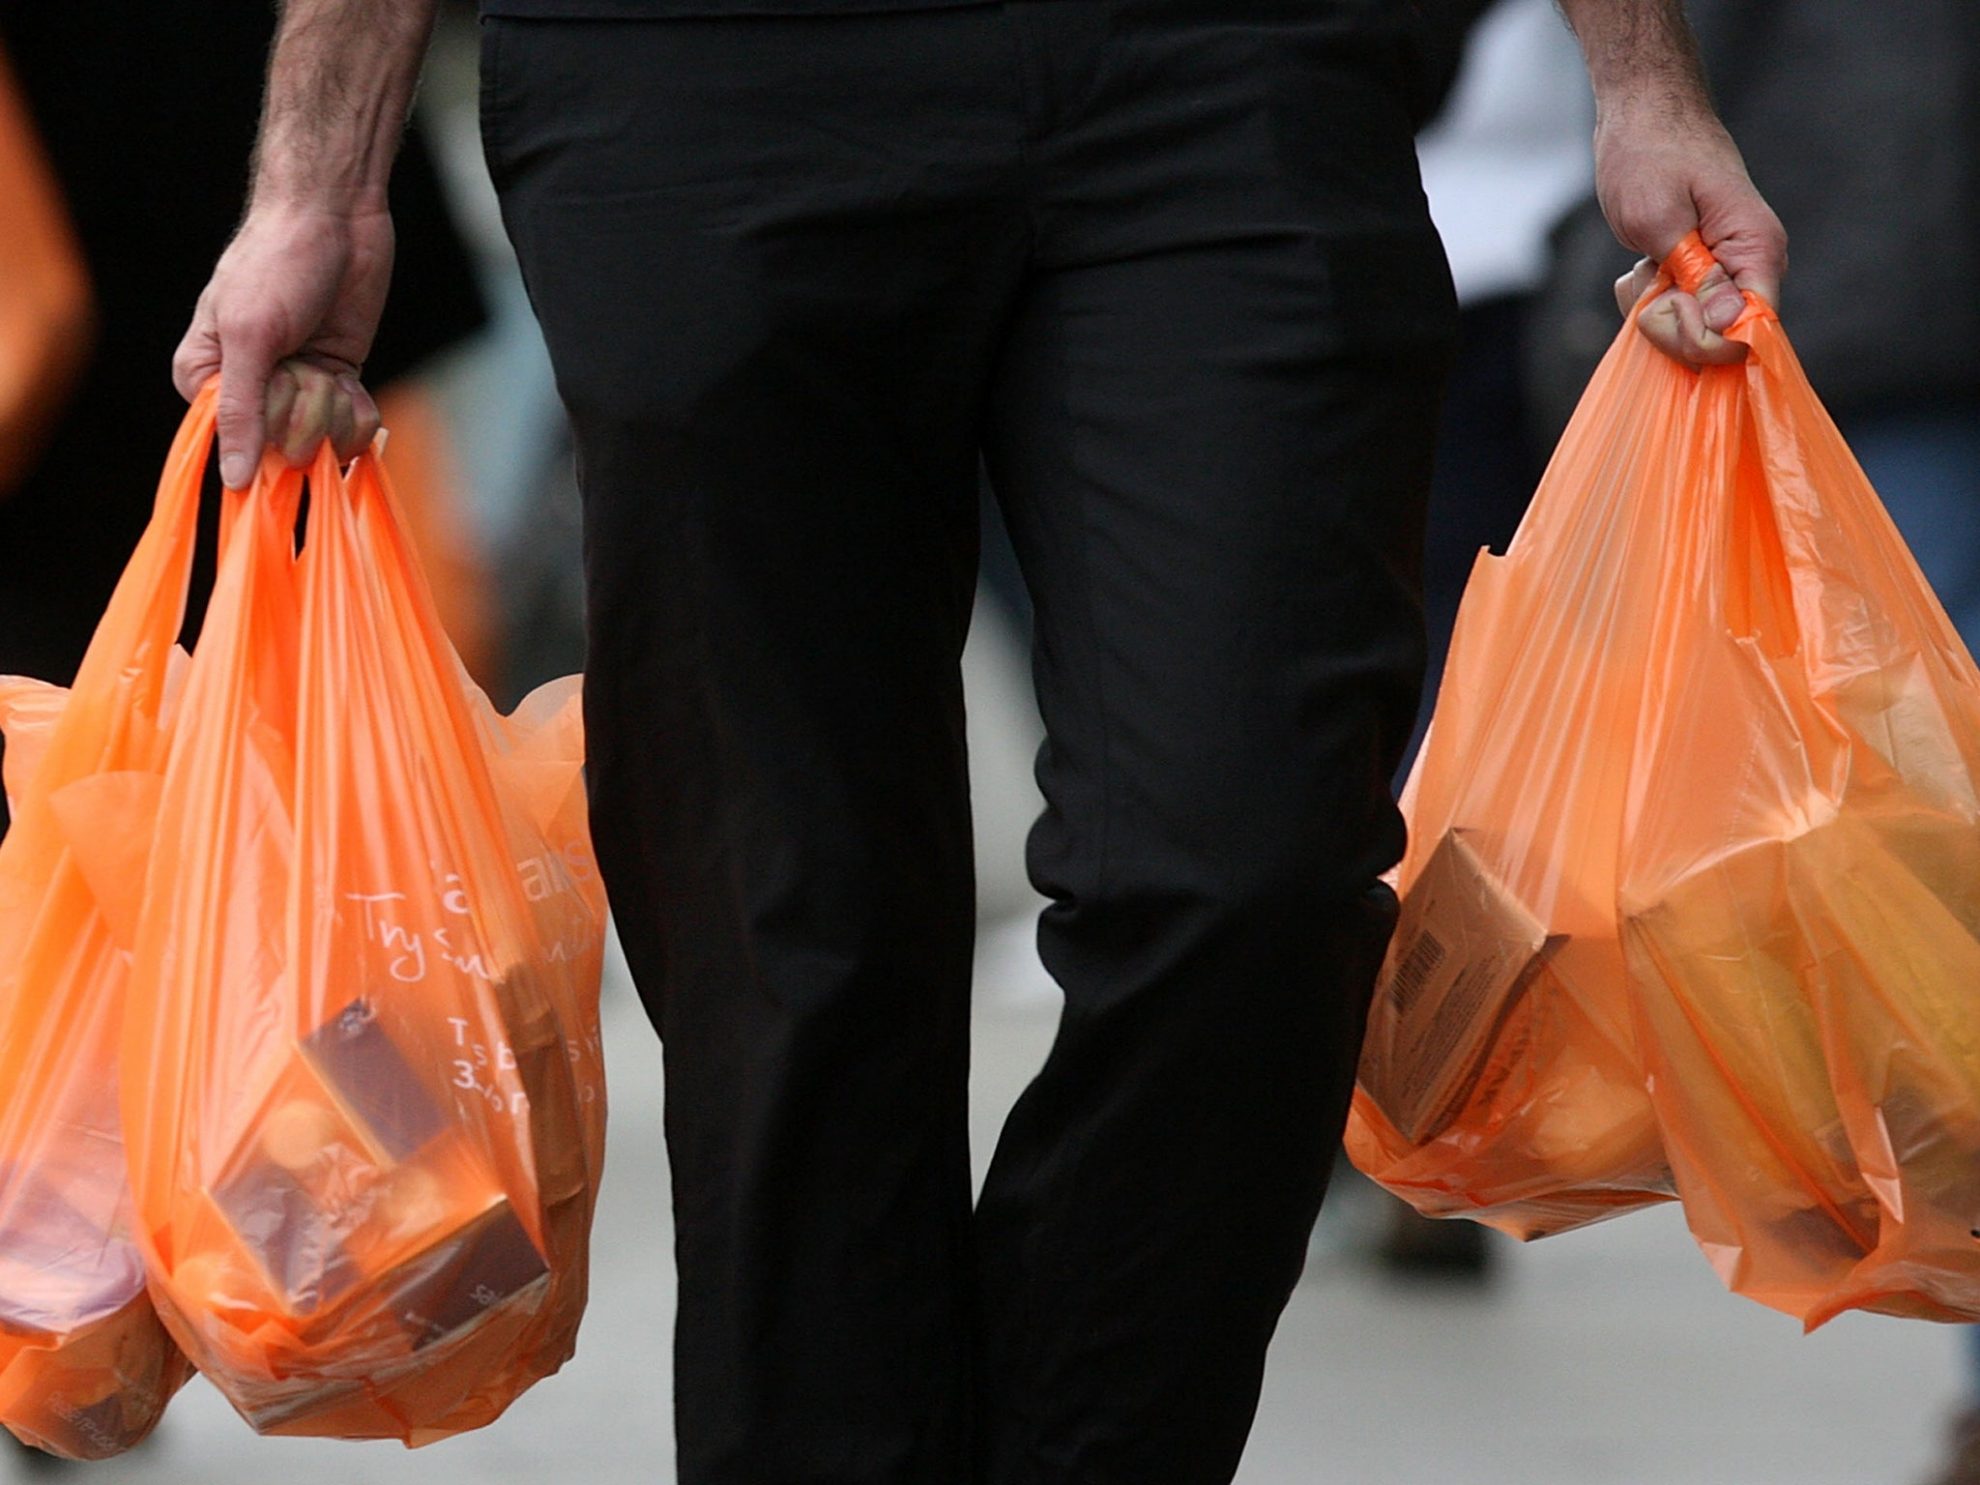 Aplinkos ministerija siūlo bausti prekybininkus už plastiko maišelių dalinimą nemokamai. Ministerijos Atliekų politikos grupės vadovė Agnė Bagočiutė sako, kad pataisas netrukus turėtų svarstyti Vyriausybė, o jai pritarus – ir Seimas.